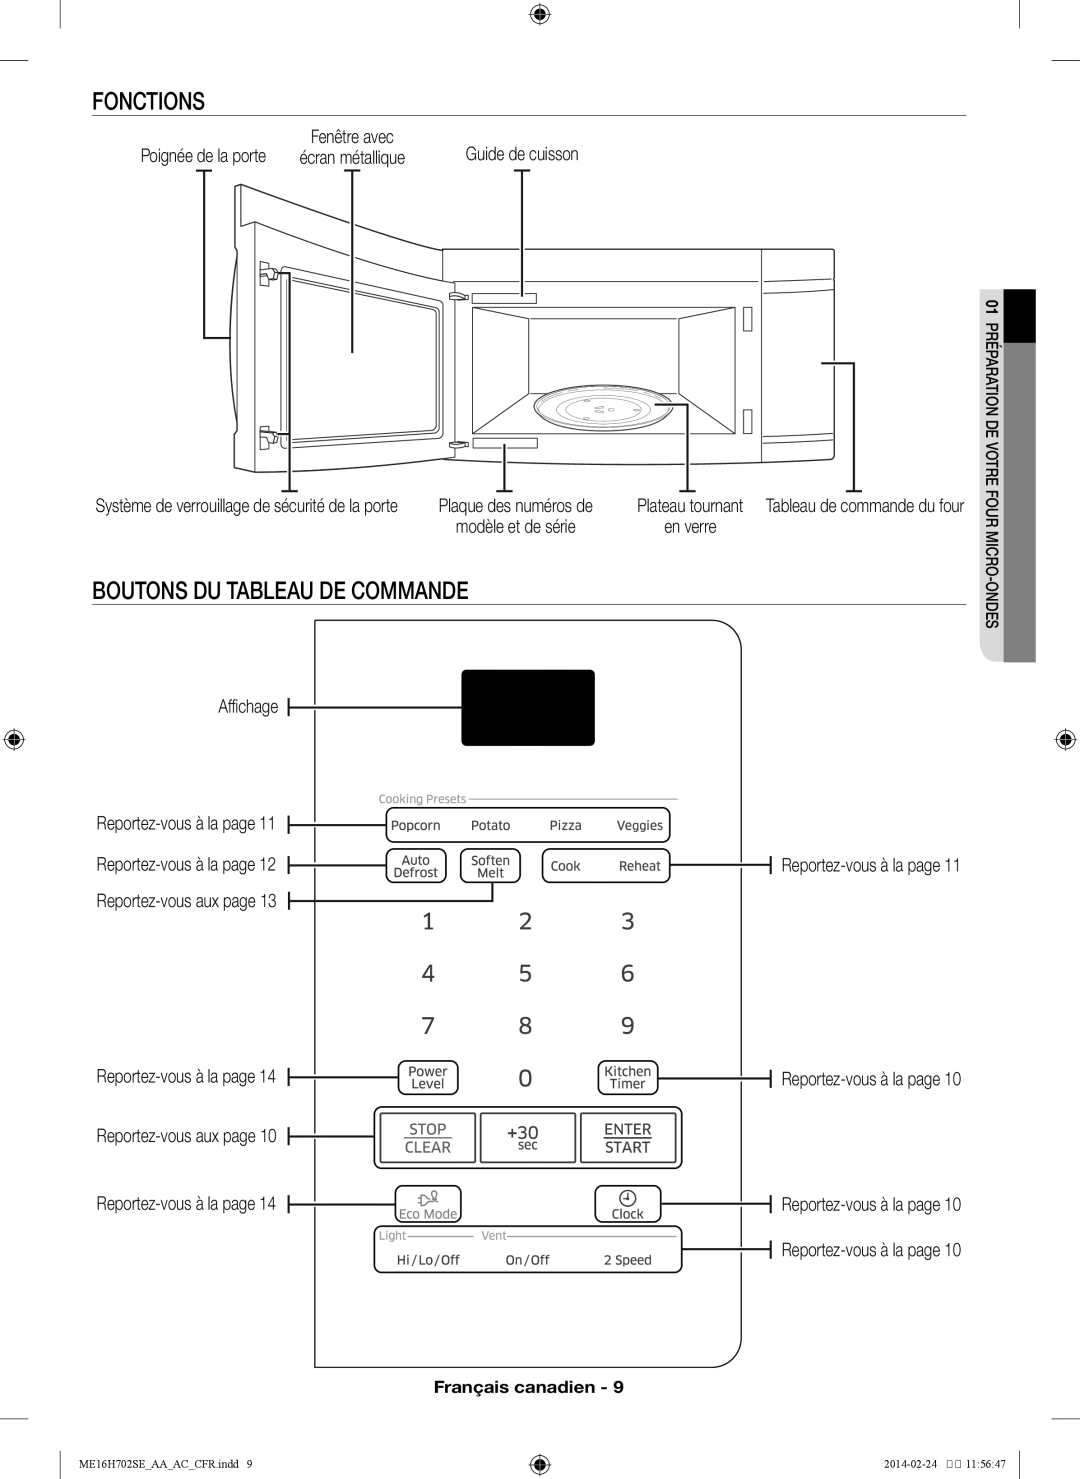 Samsung ME16H702SE user manual Fonctions, Boutons du tableau de commande 